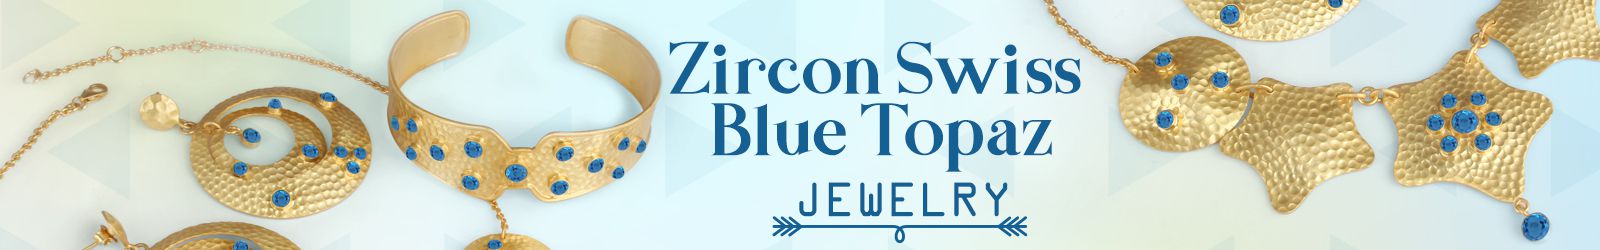 Silver Zircon Swiss Blue Topaz Jewelry Wholesale Supplier